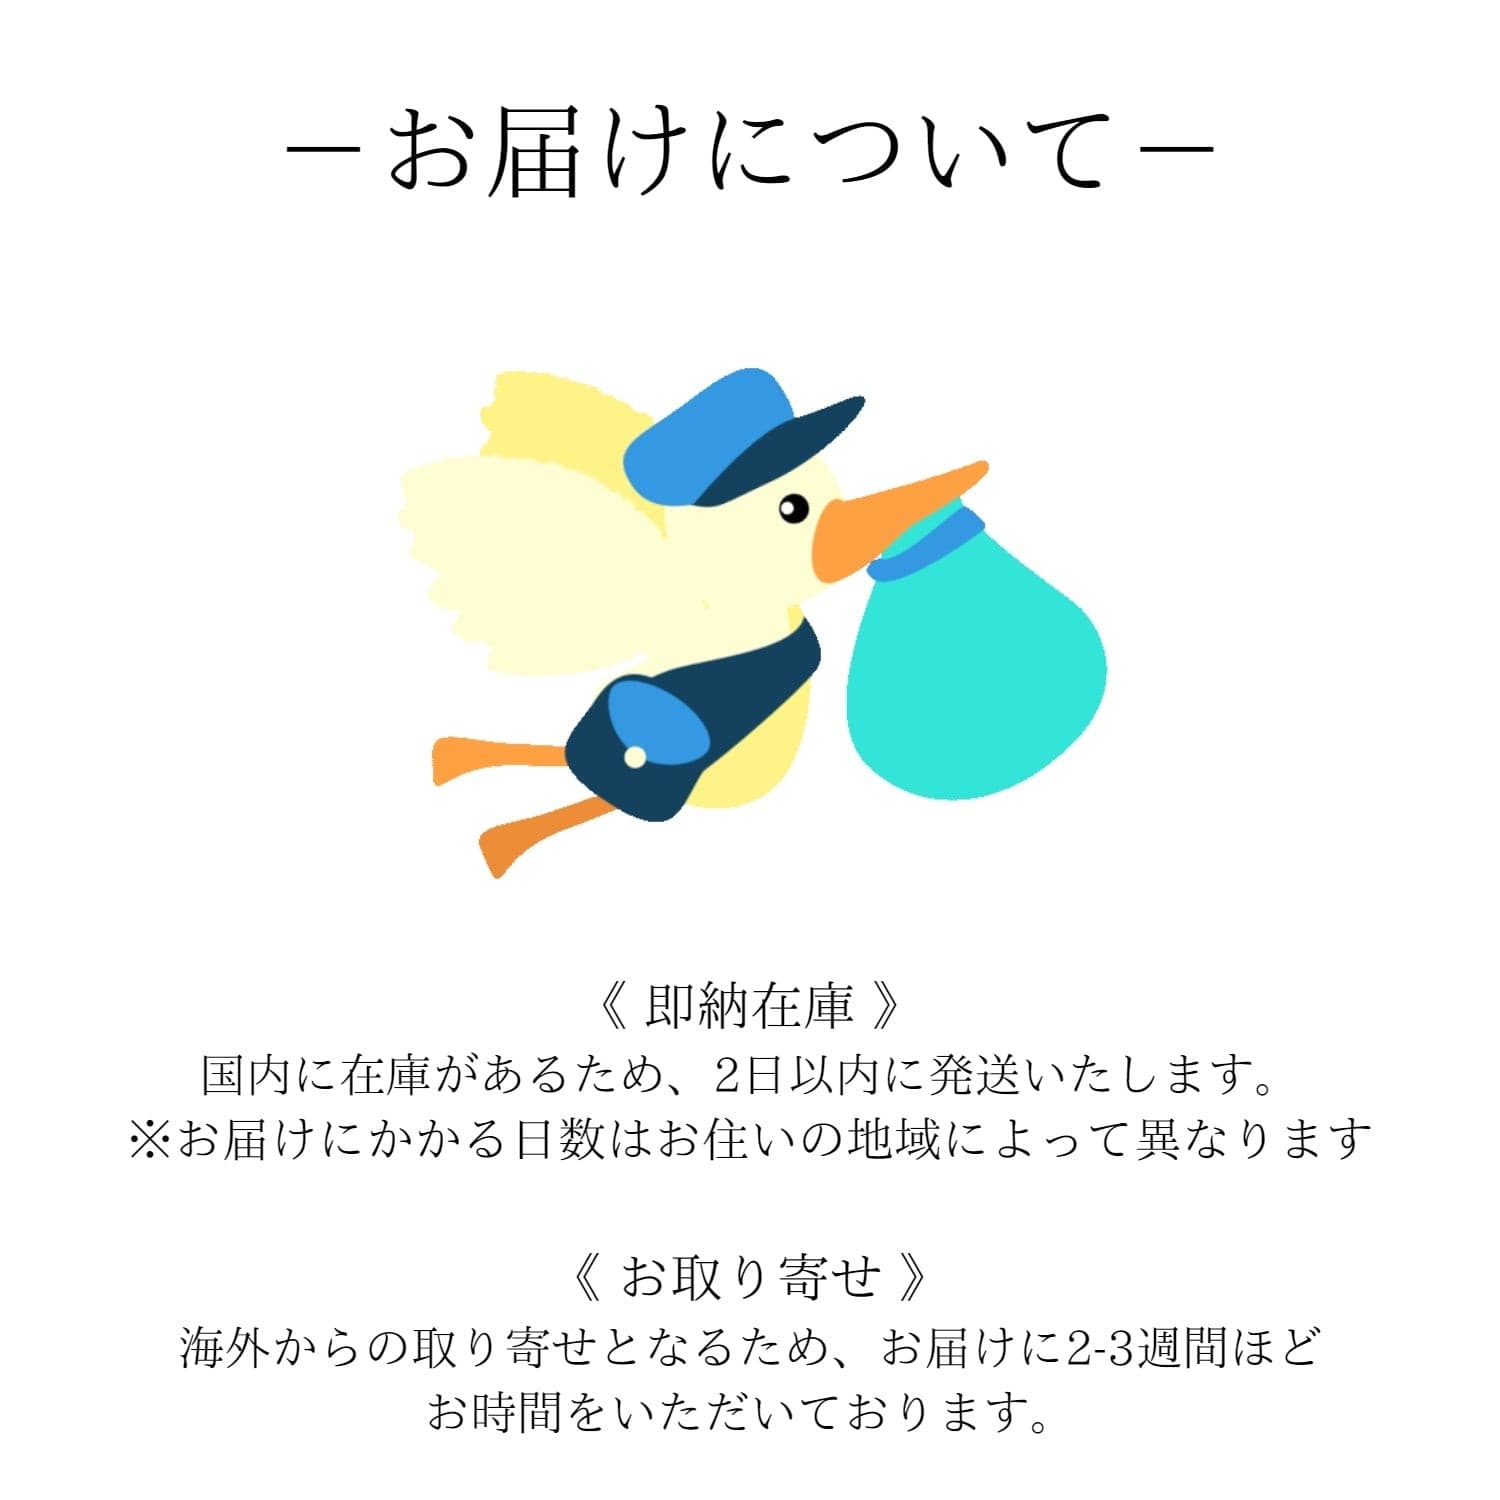 ペアネックレス  S925製【NOPN1】  ネックレス Nicoiro Official Store ペアルック.